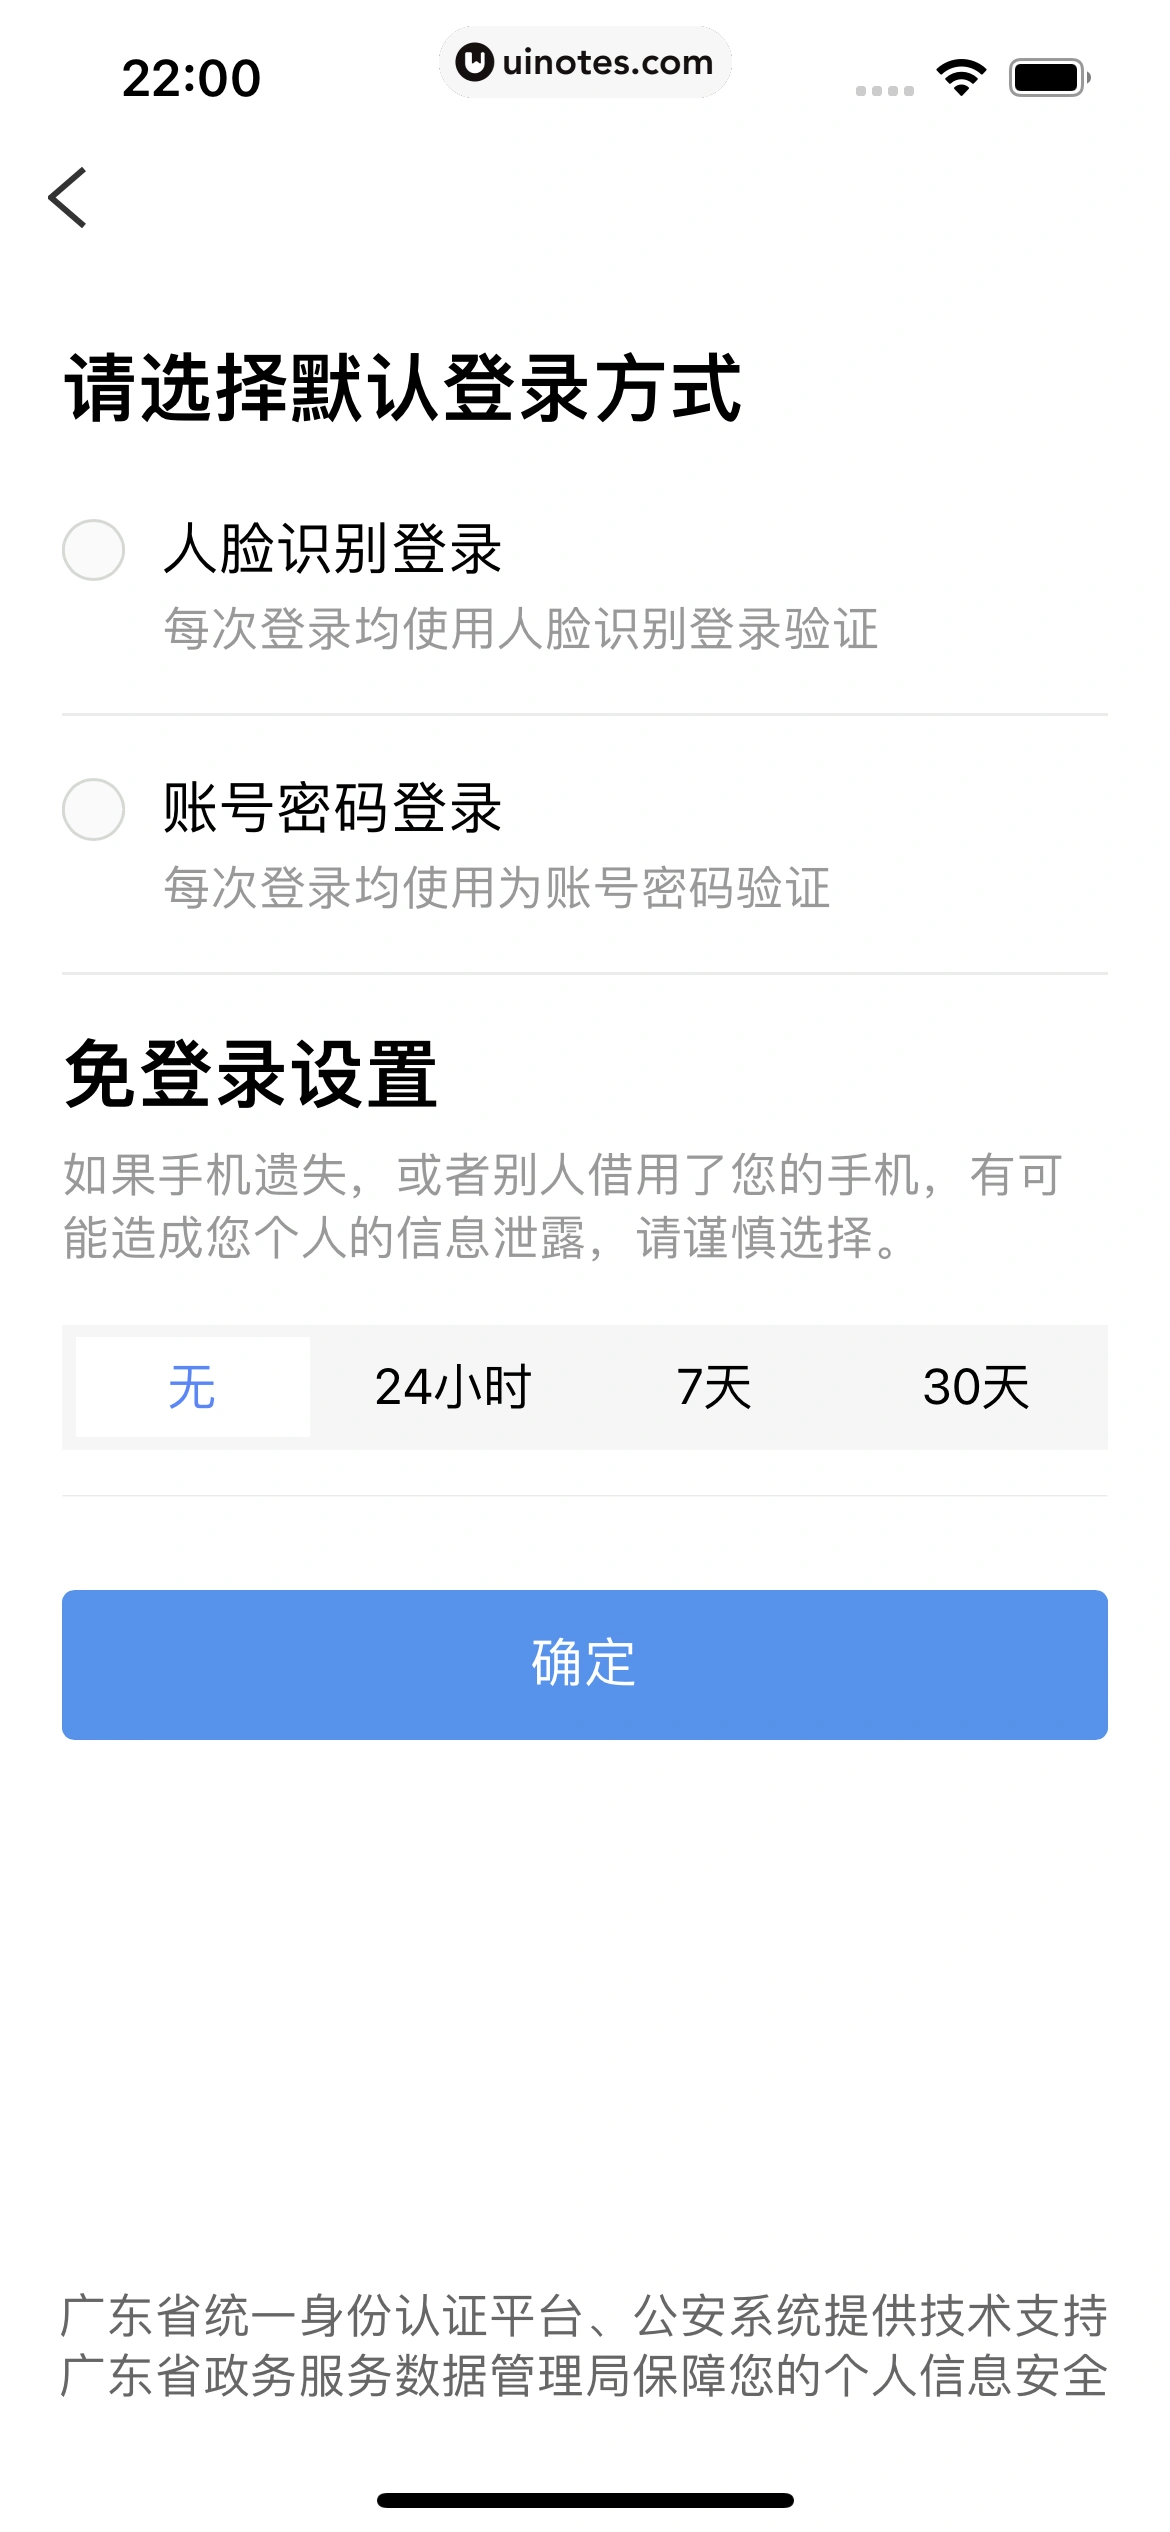 粤省事 App 截图 140 - UI Notes